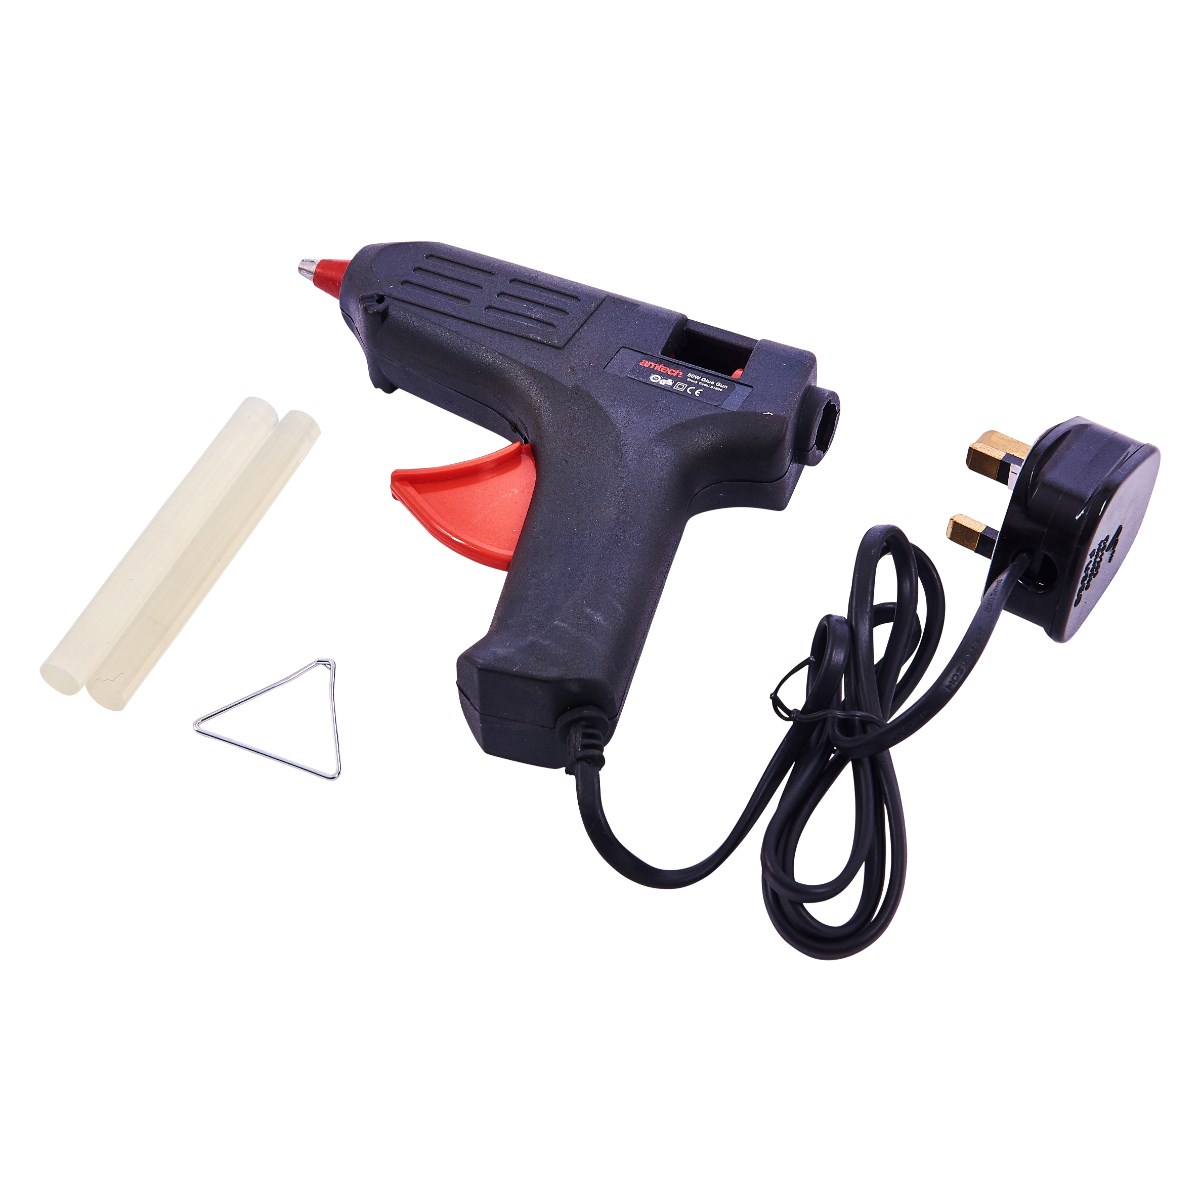 50W Cordless Hot Melt Glue Gun with 30Pcs 7mm Glue Sticks Repair